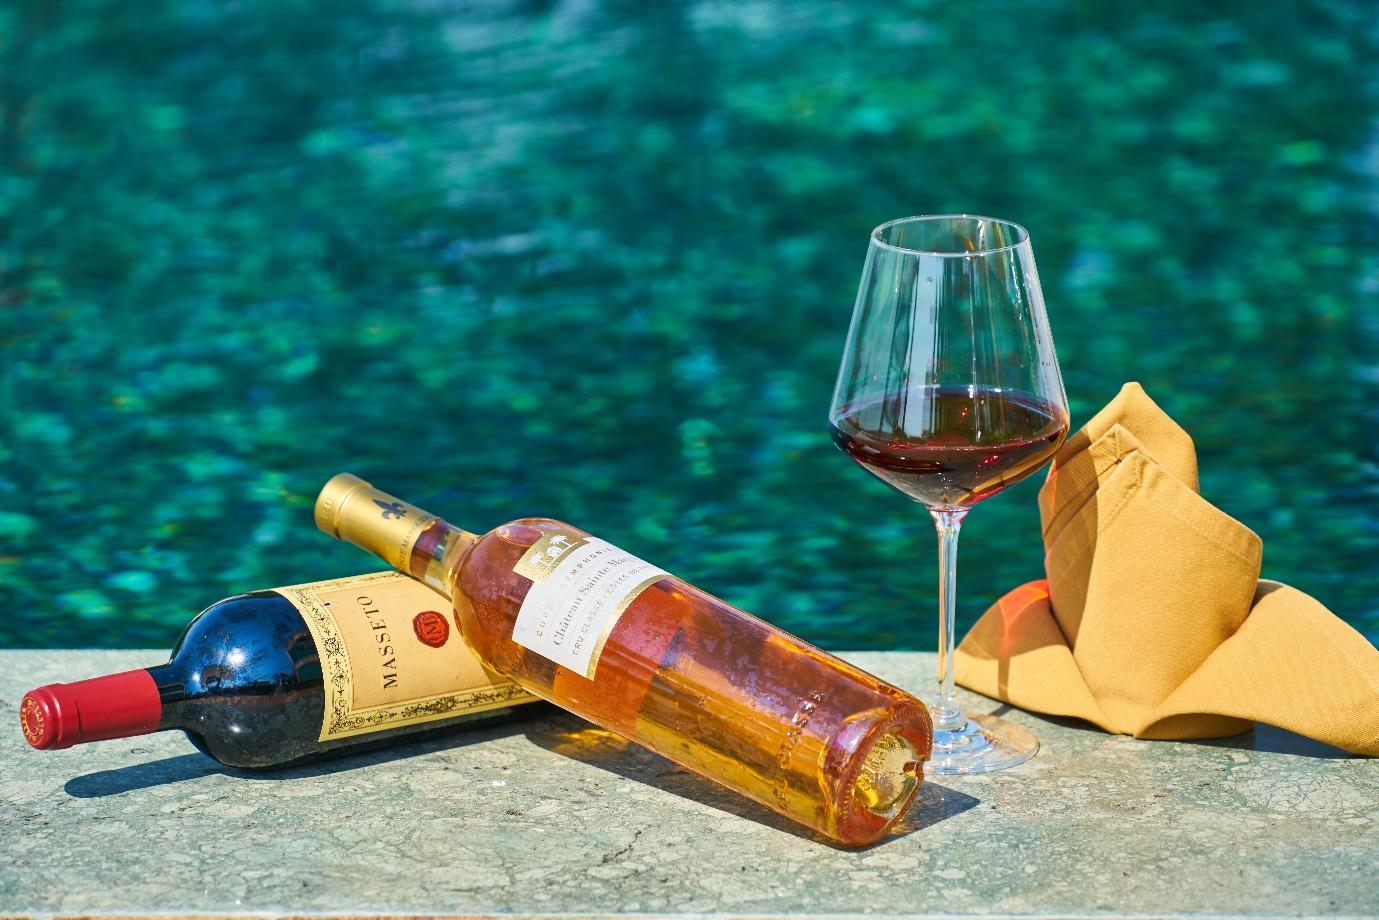 Wine bottles near a pool